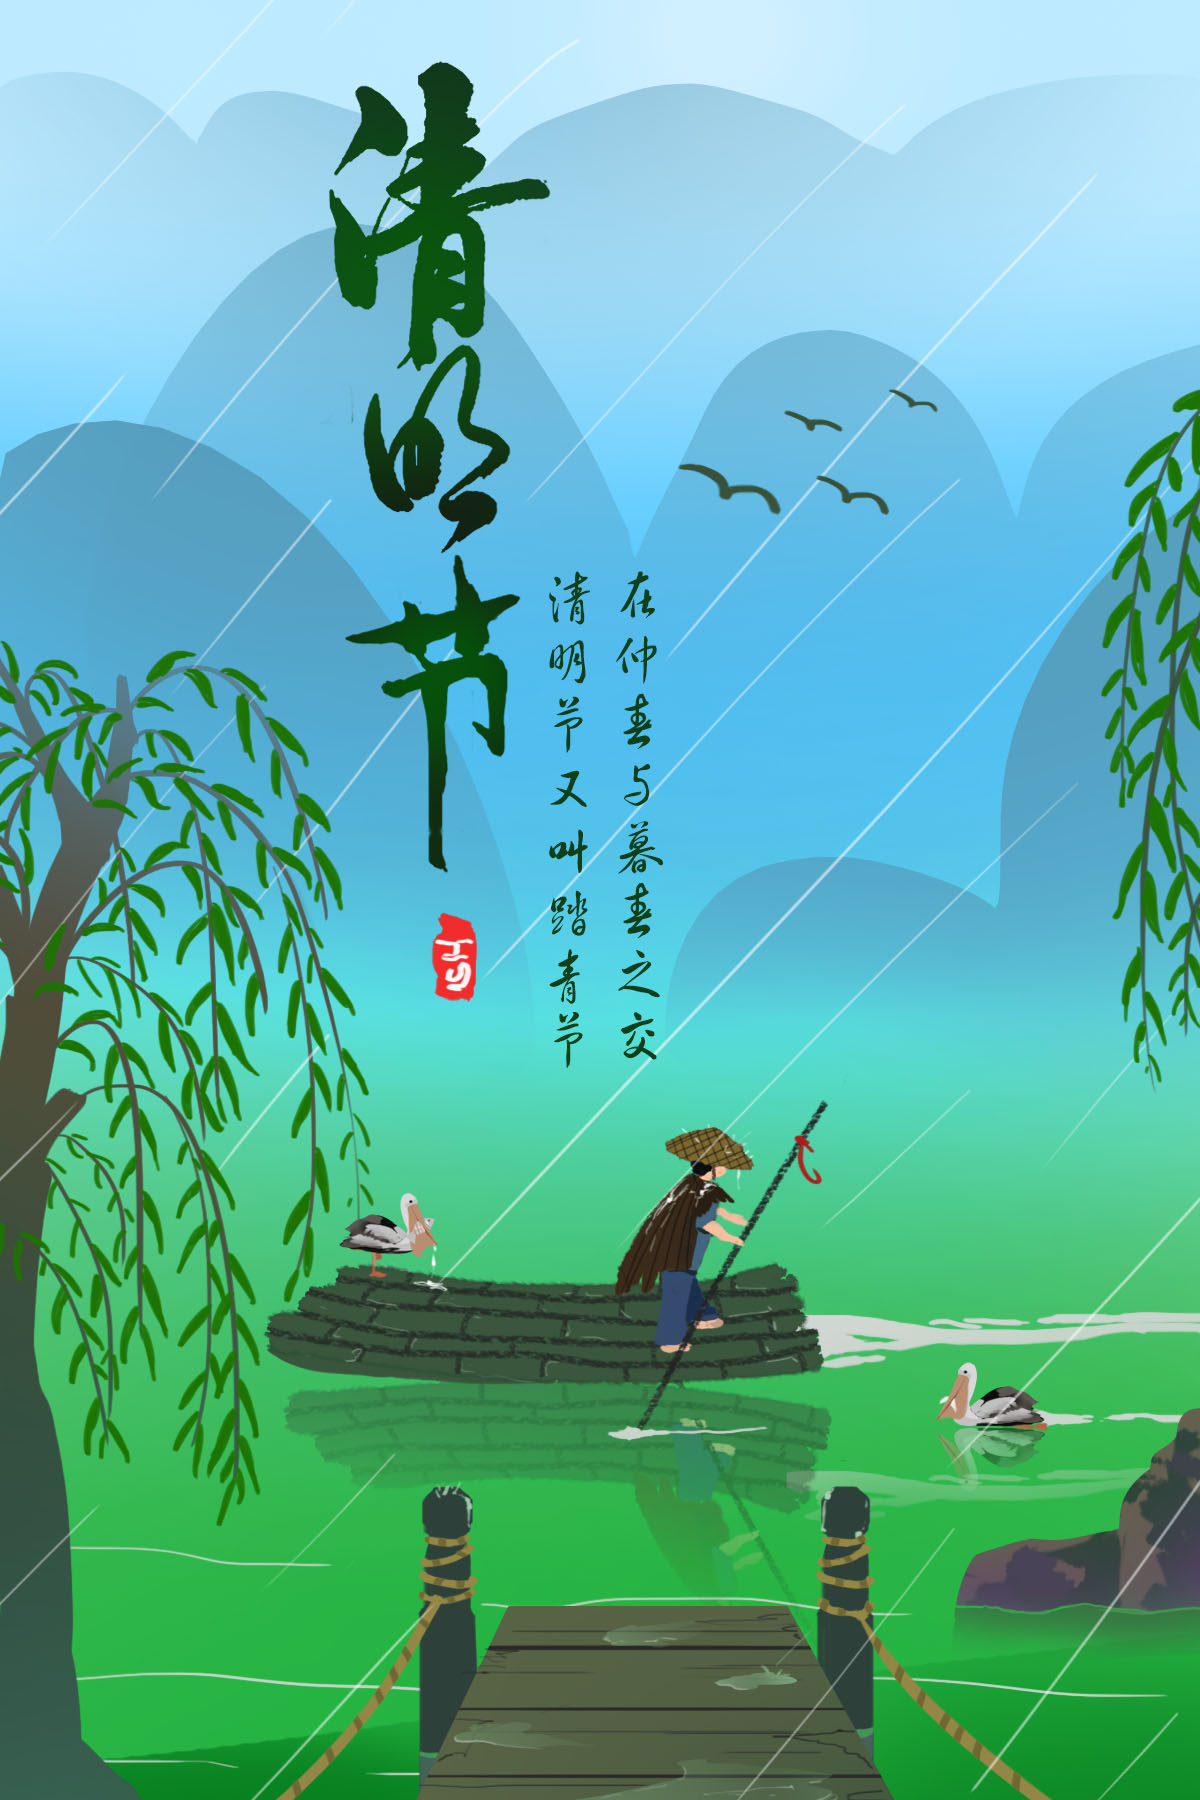 宋朝文人的一首清明之诗诗文虽短却写出了西湖几大著名景色